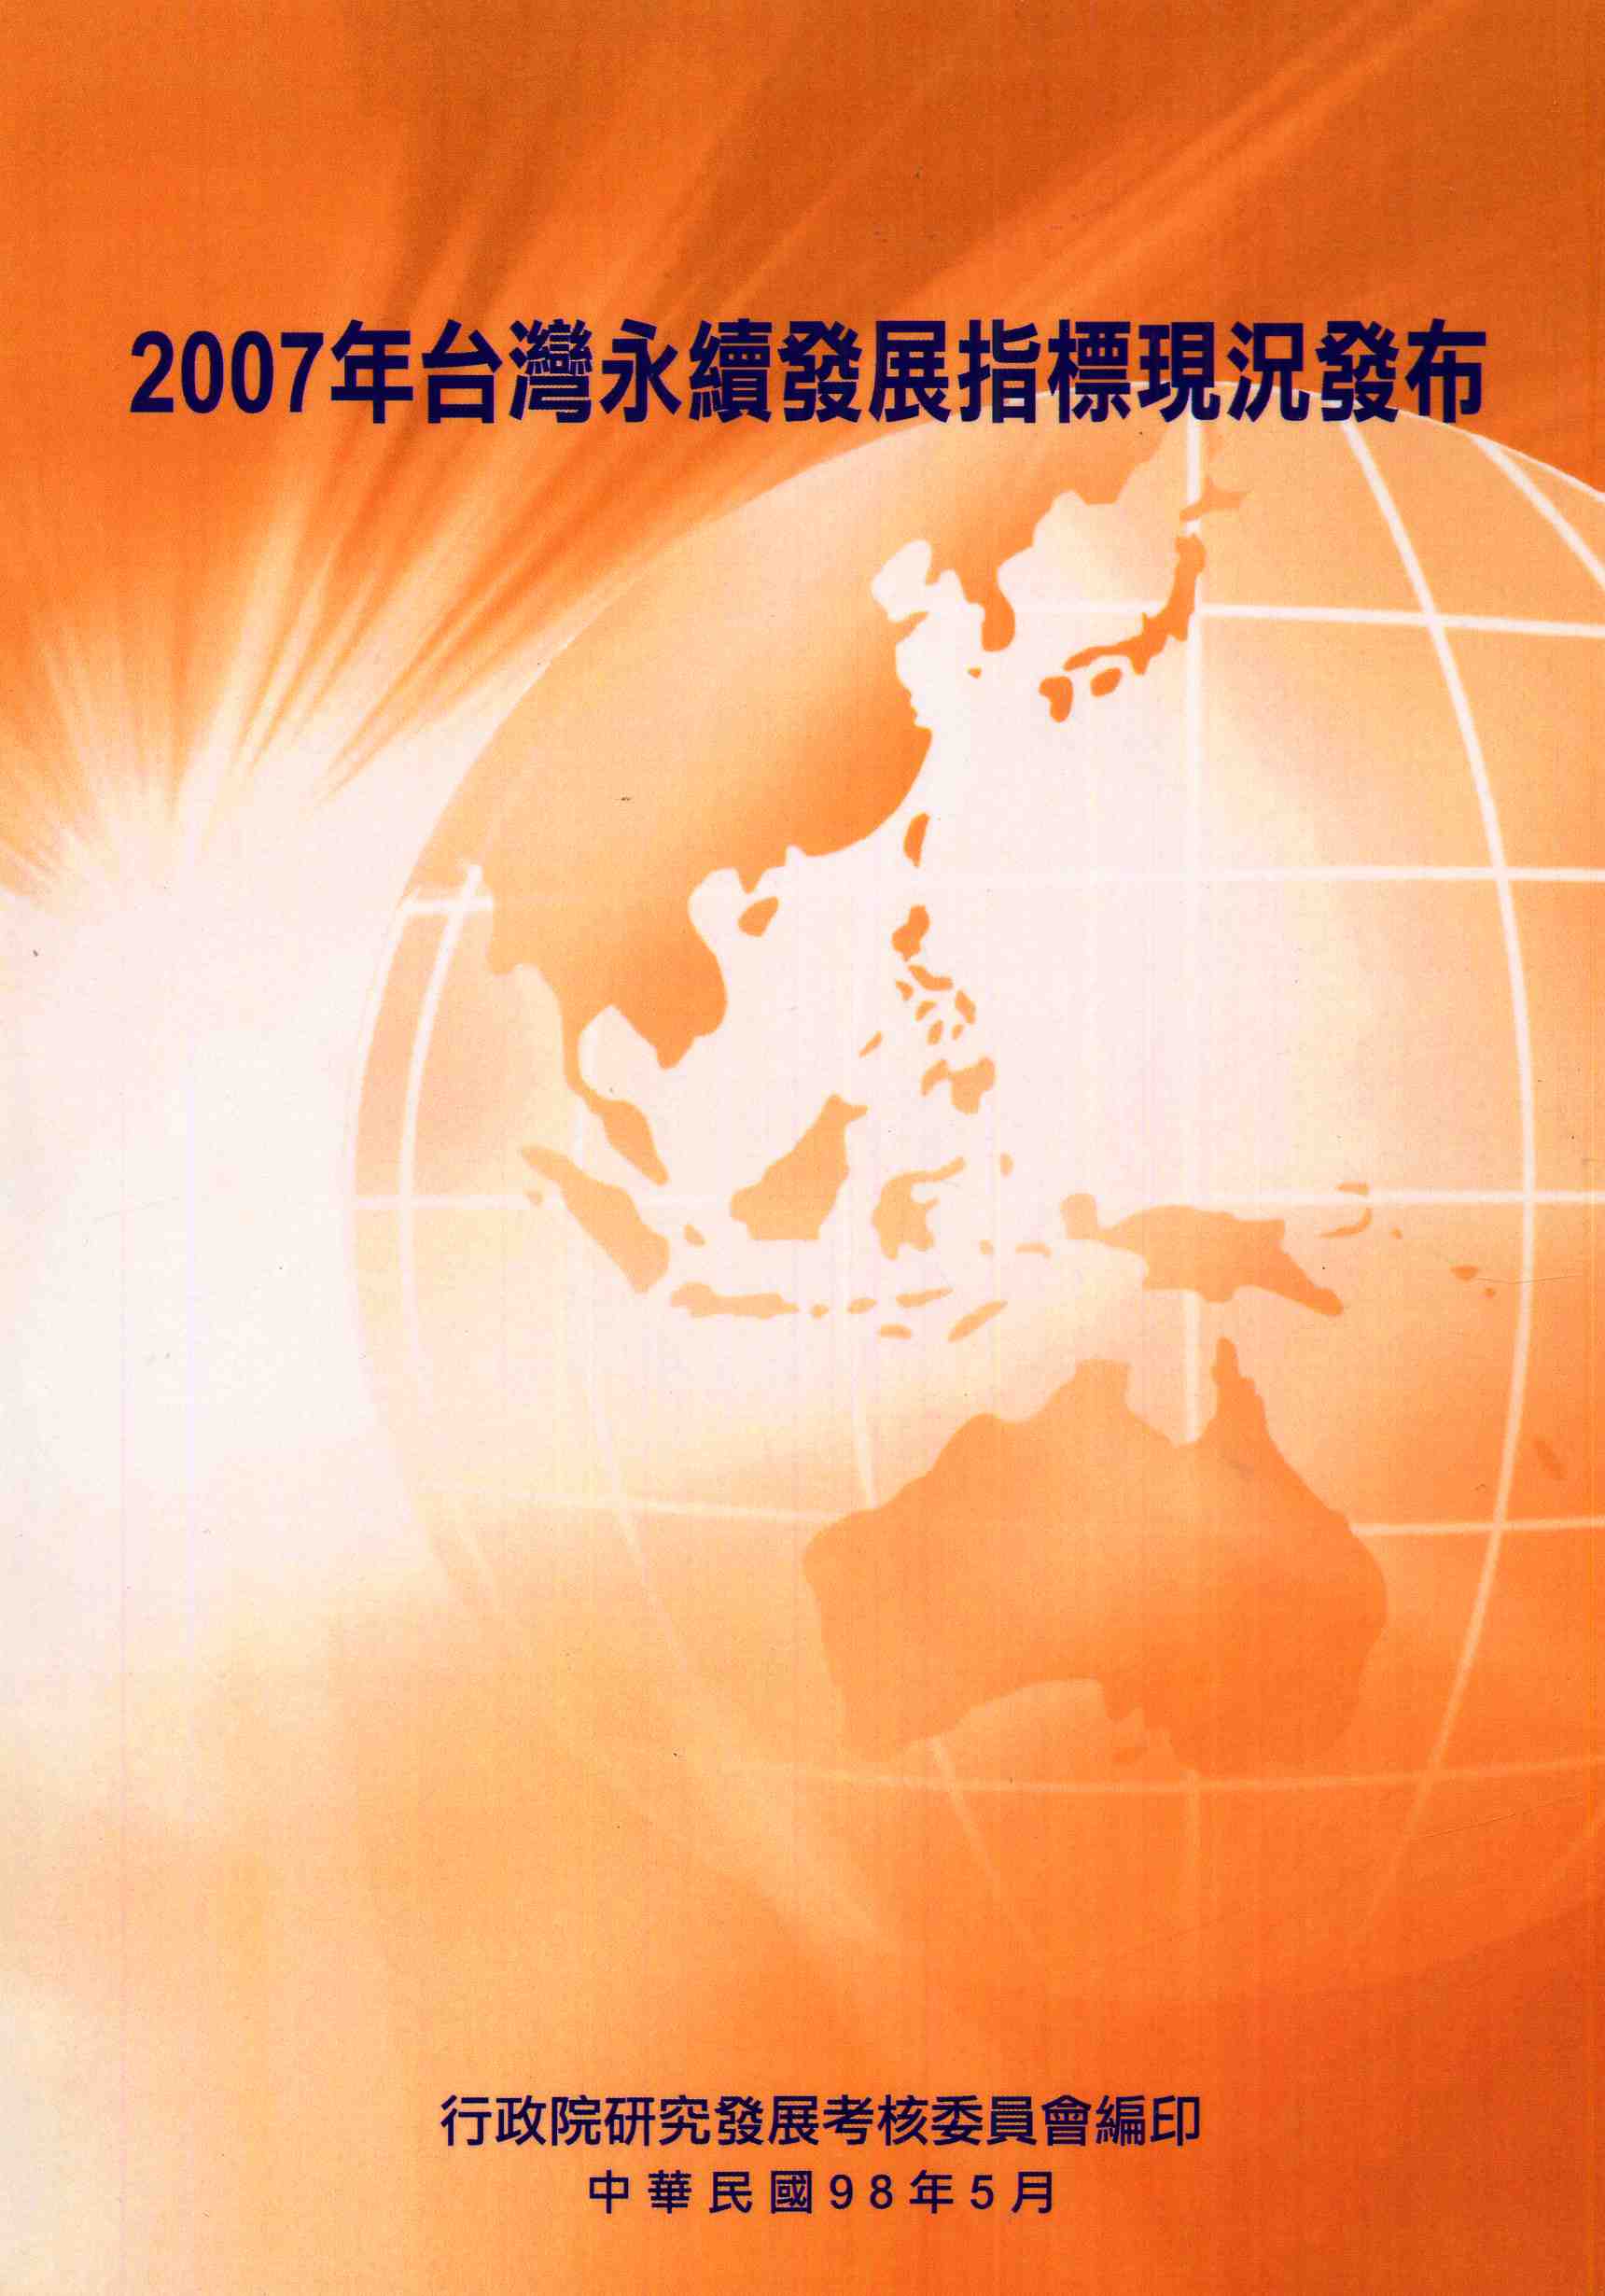 2007年台灣永續發展指標現況發布